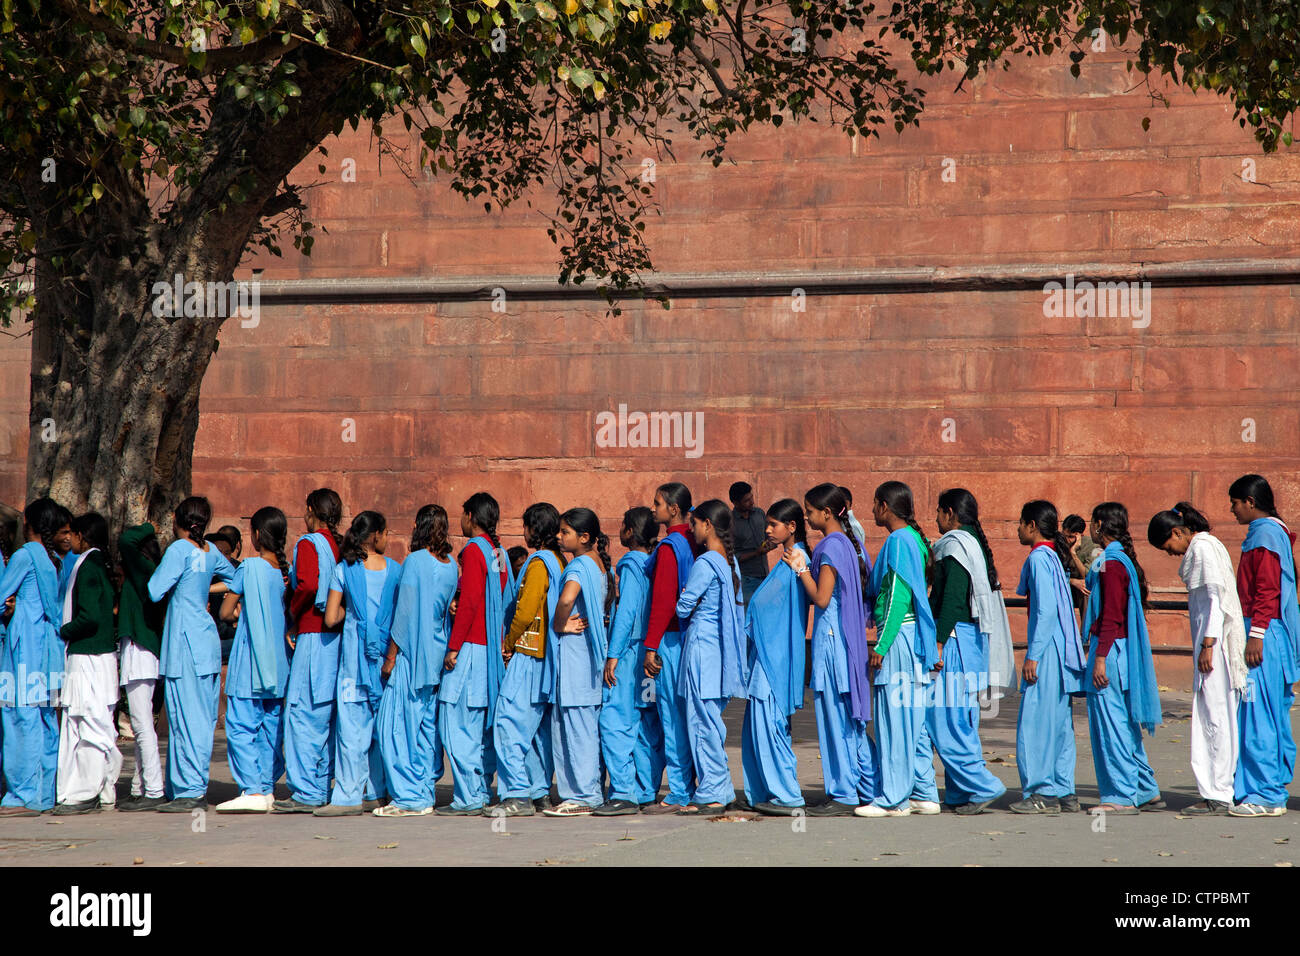 Adolescentes musulmanes portant des uniformes de l'école bleue dans Old Delhi, Inde Banque D'Images